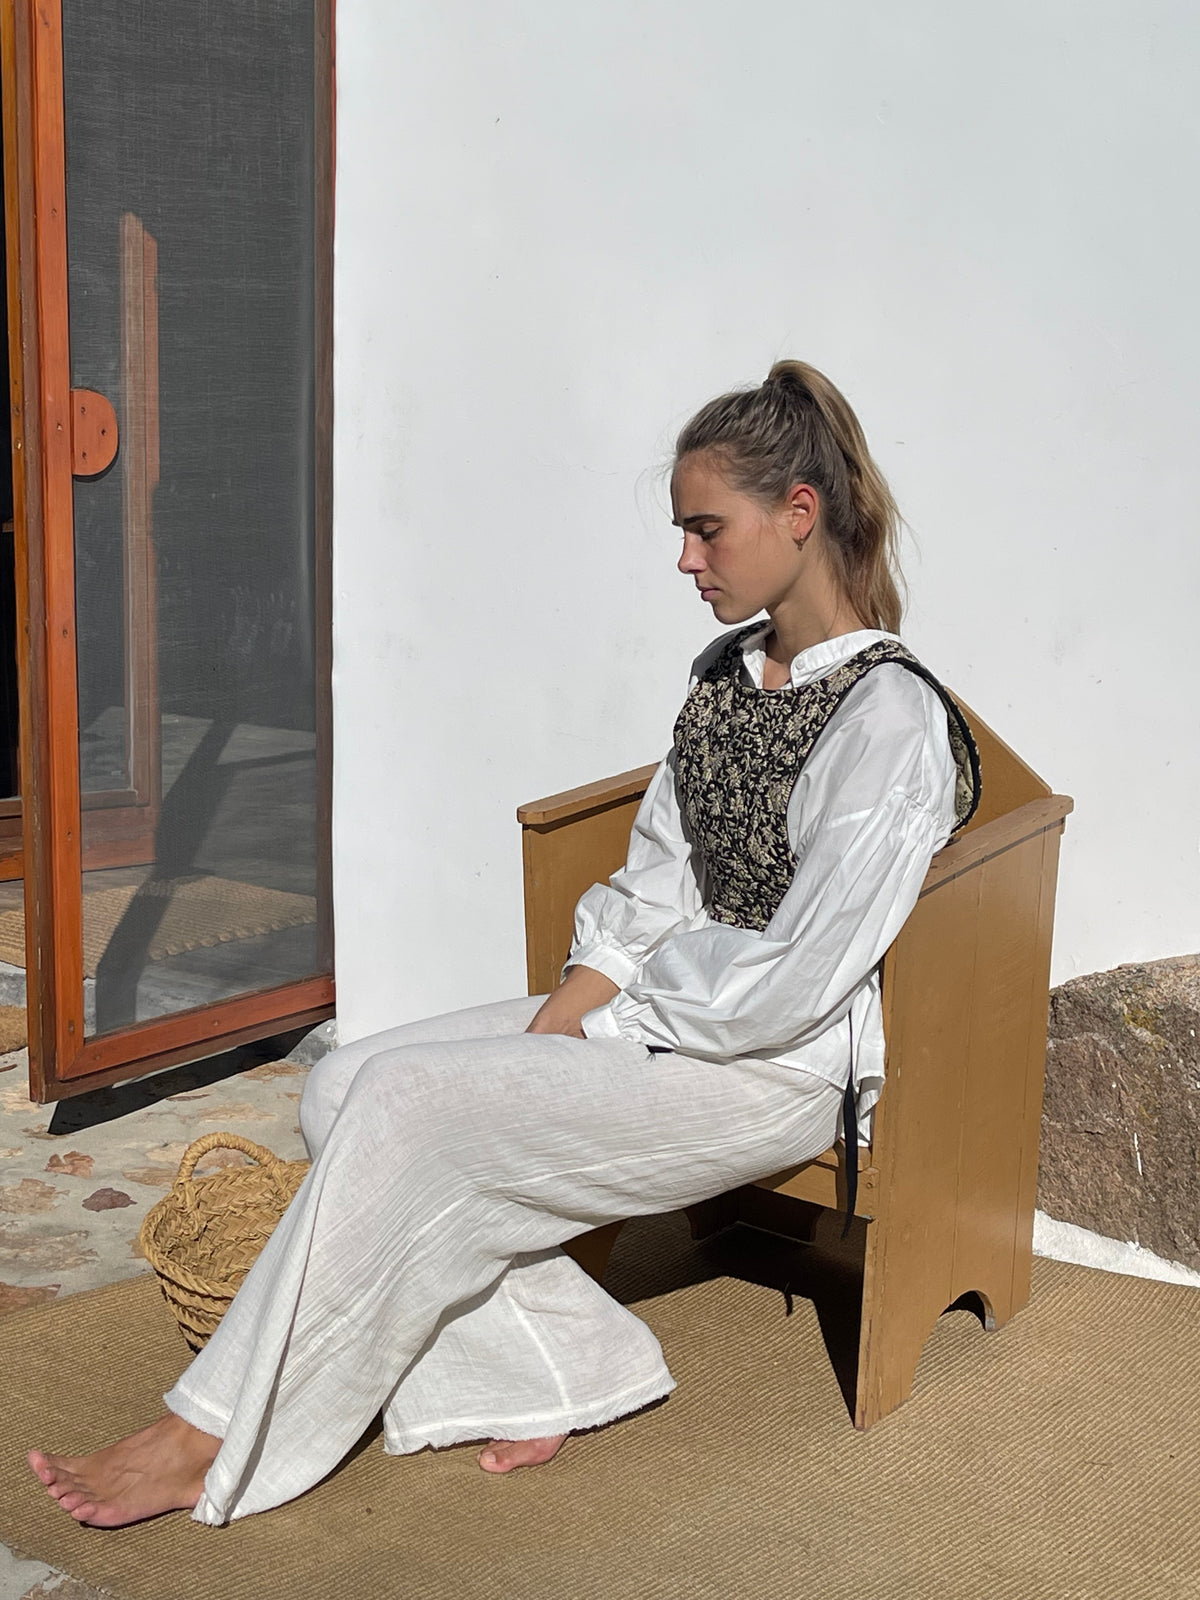 Saint Bernadette Vest — Dew Quilt Indian Cotton